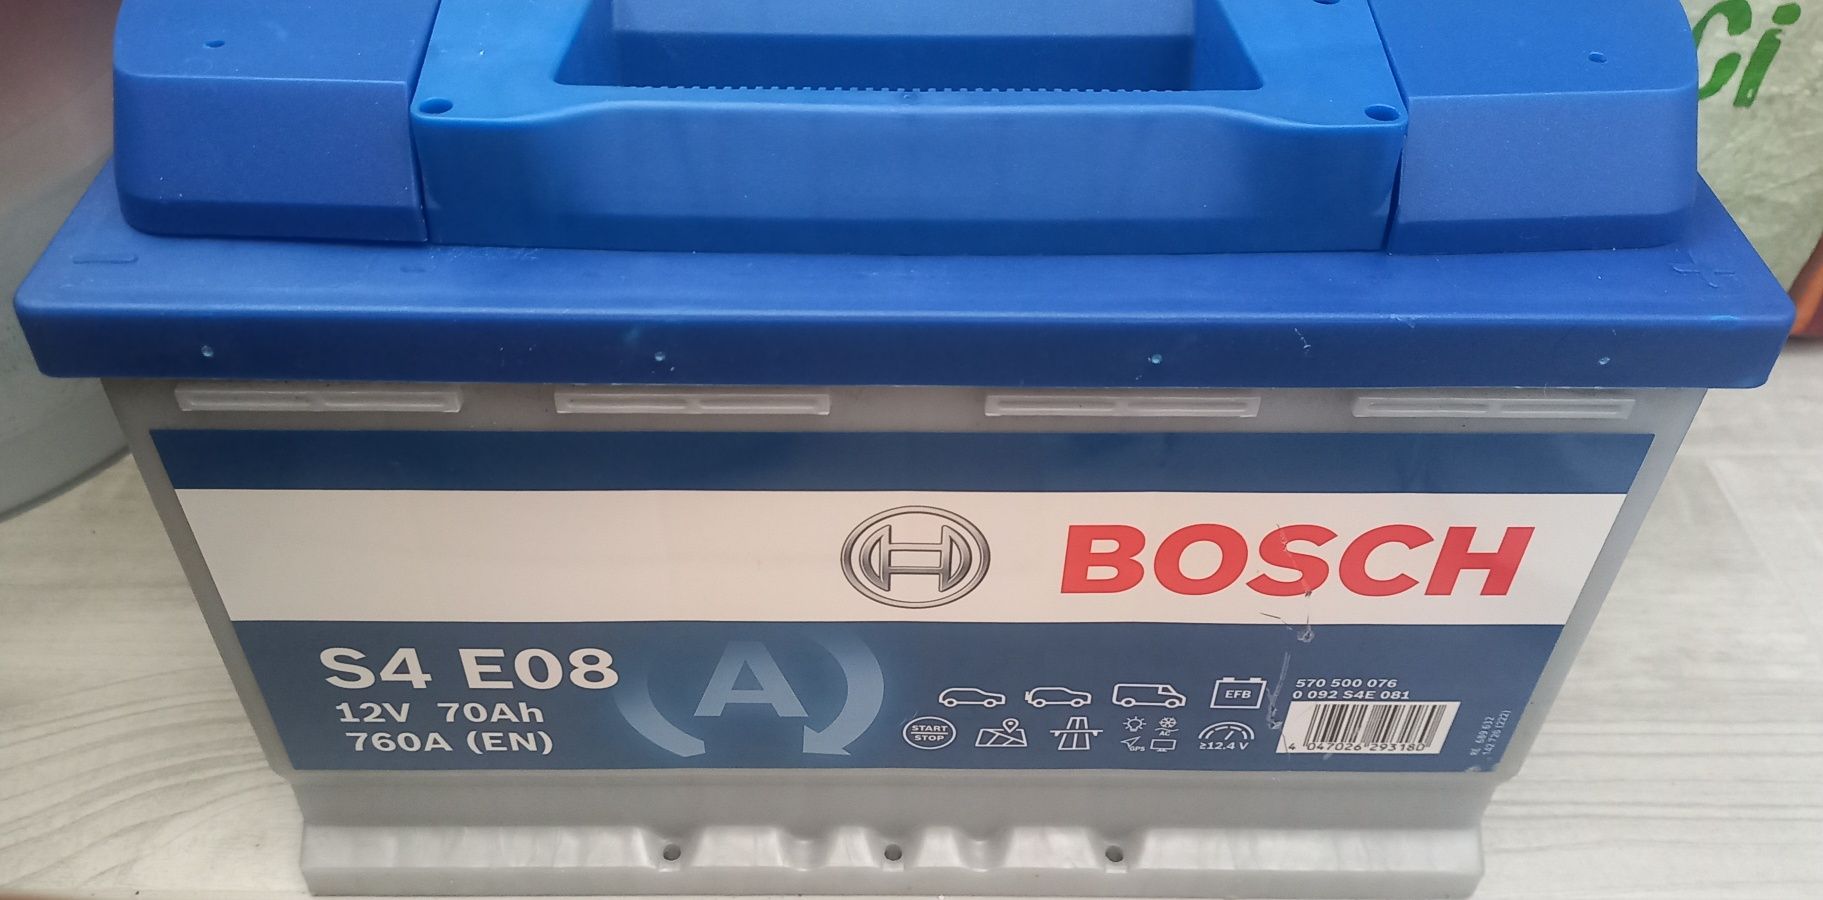 Автомобильный аккумулятор Bosch 70Ah-12v EFB (S4E08), R+, EN760